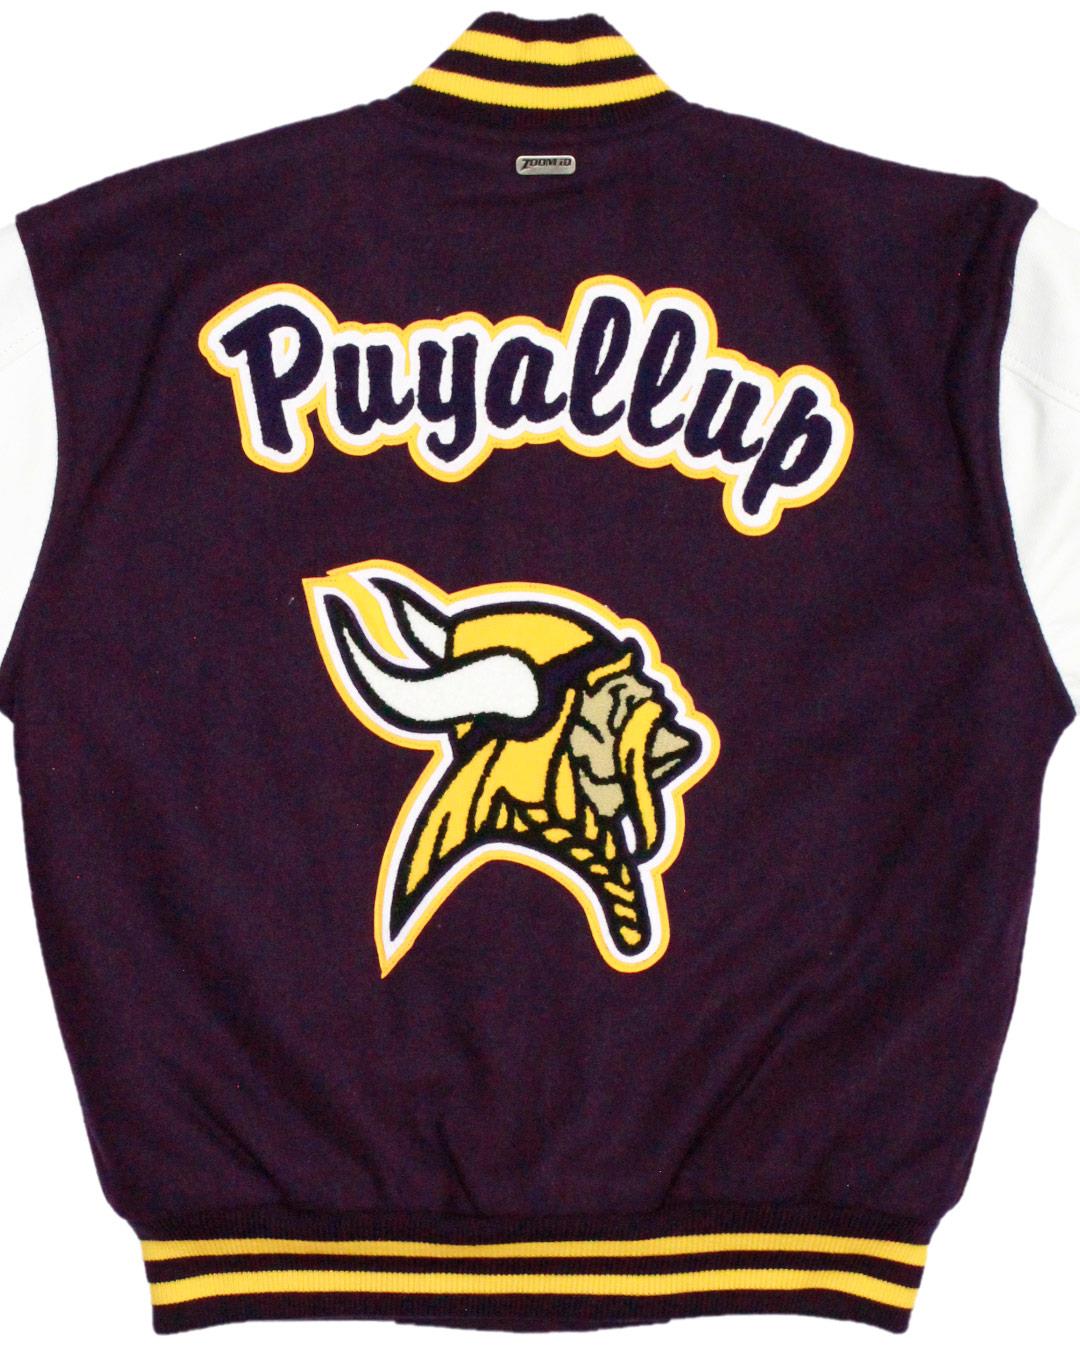 Puyallup High School Vikings Leather Man Jacket, Puyallup, WA - Back